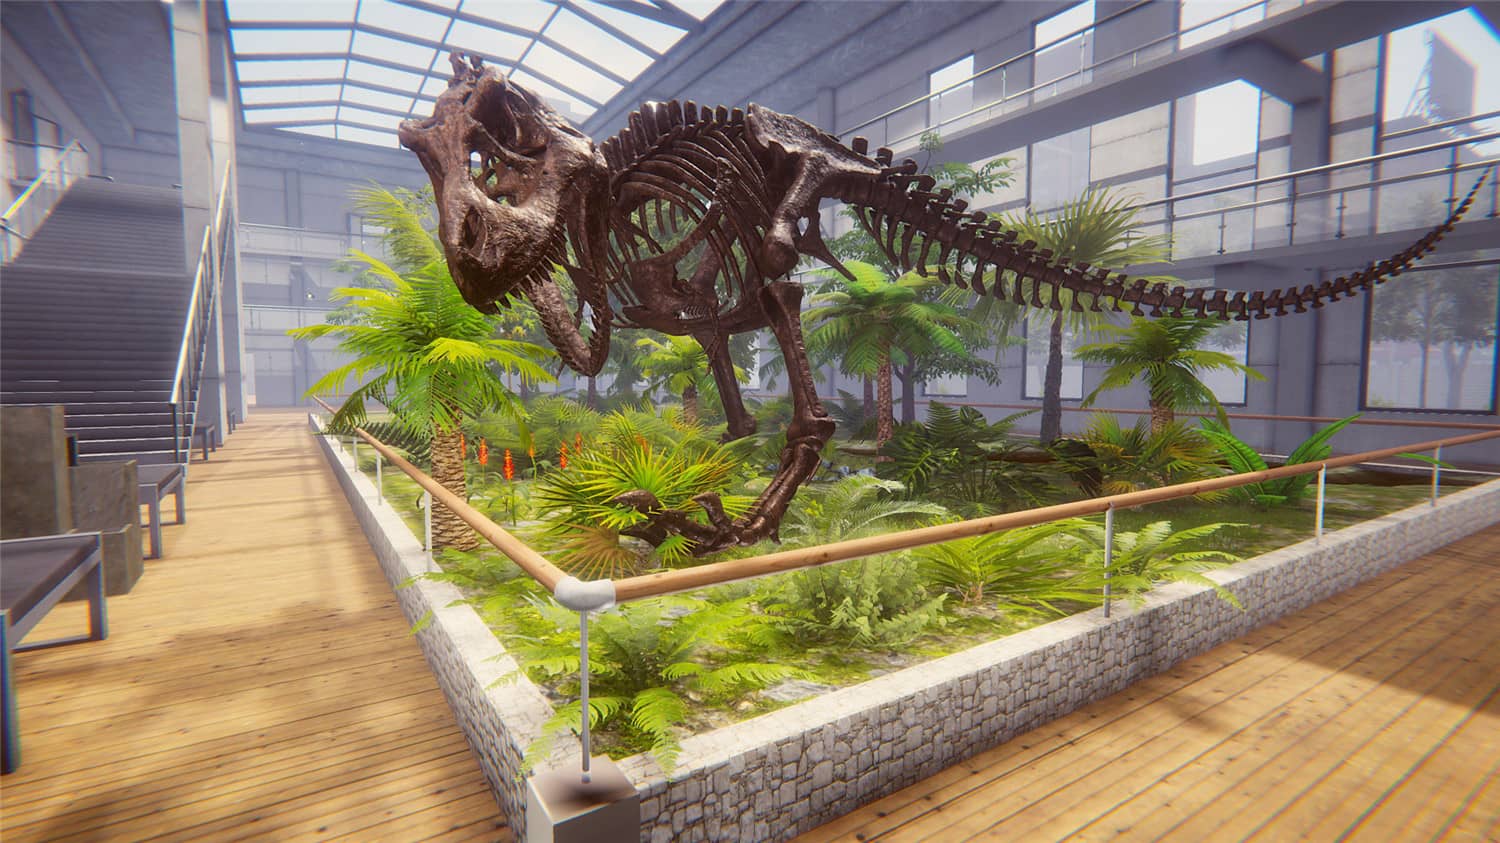 恐龙化石猎人 古生物学家模拟器/Dinosaur Fossil Hunter 更新至v2.5.11-容量16.7GB天亦网独家提供-天亦资源网